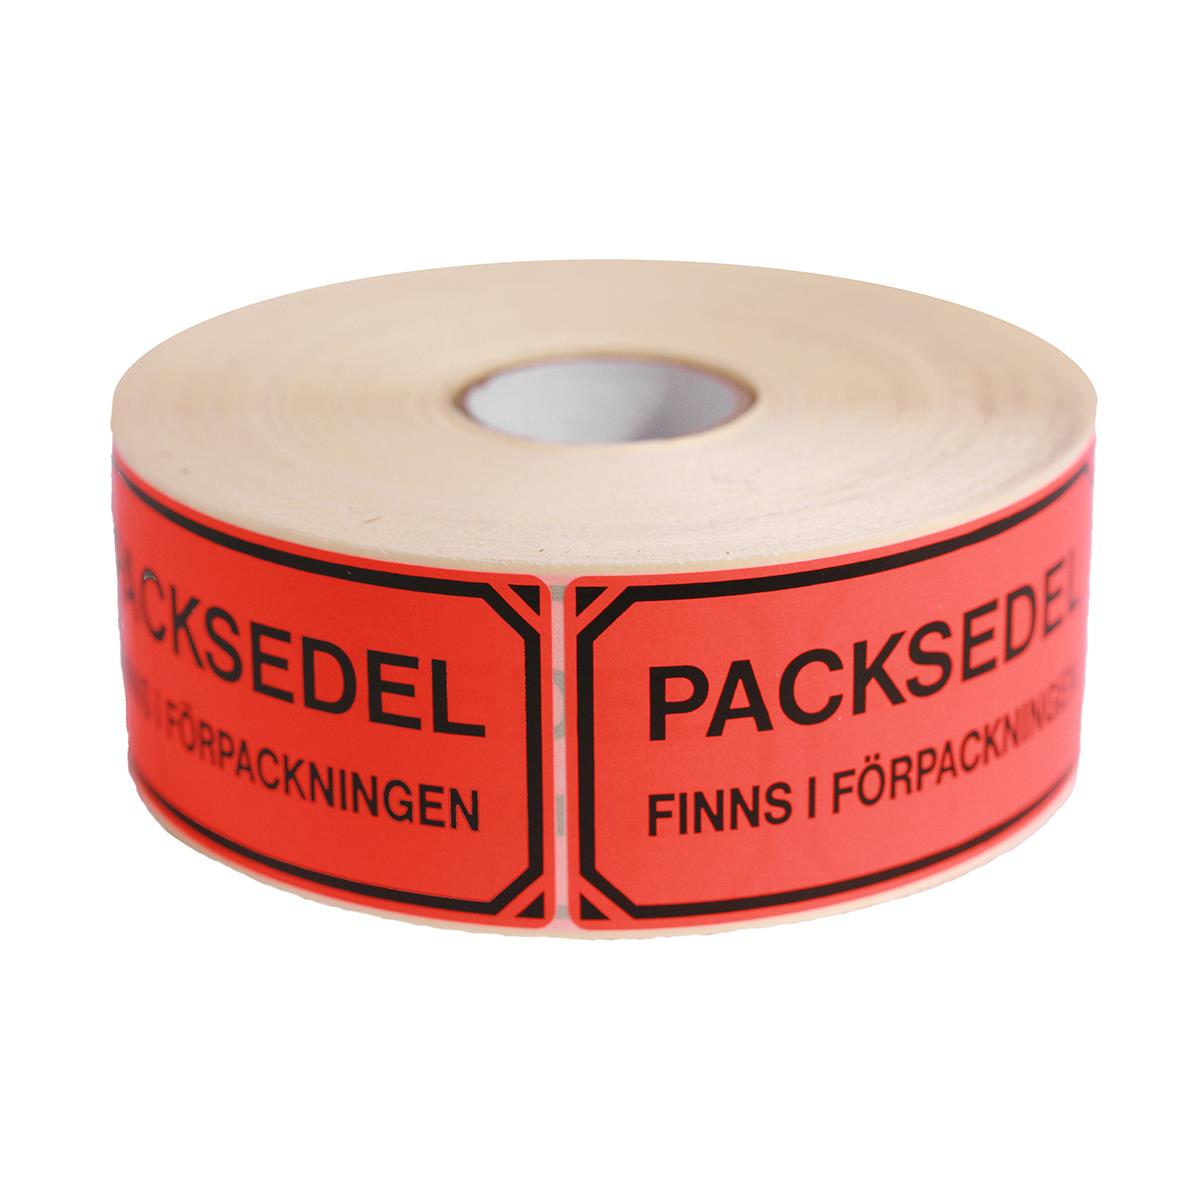 Etikett Varning packsedel finns i fp 15070004_2